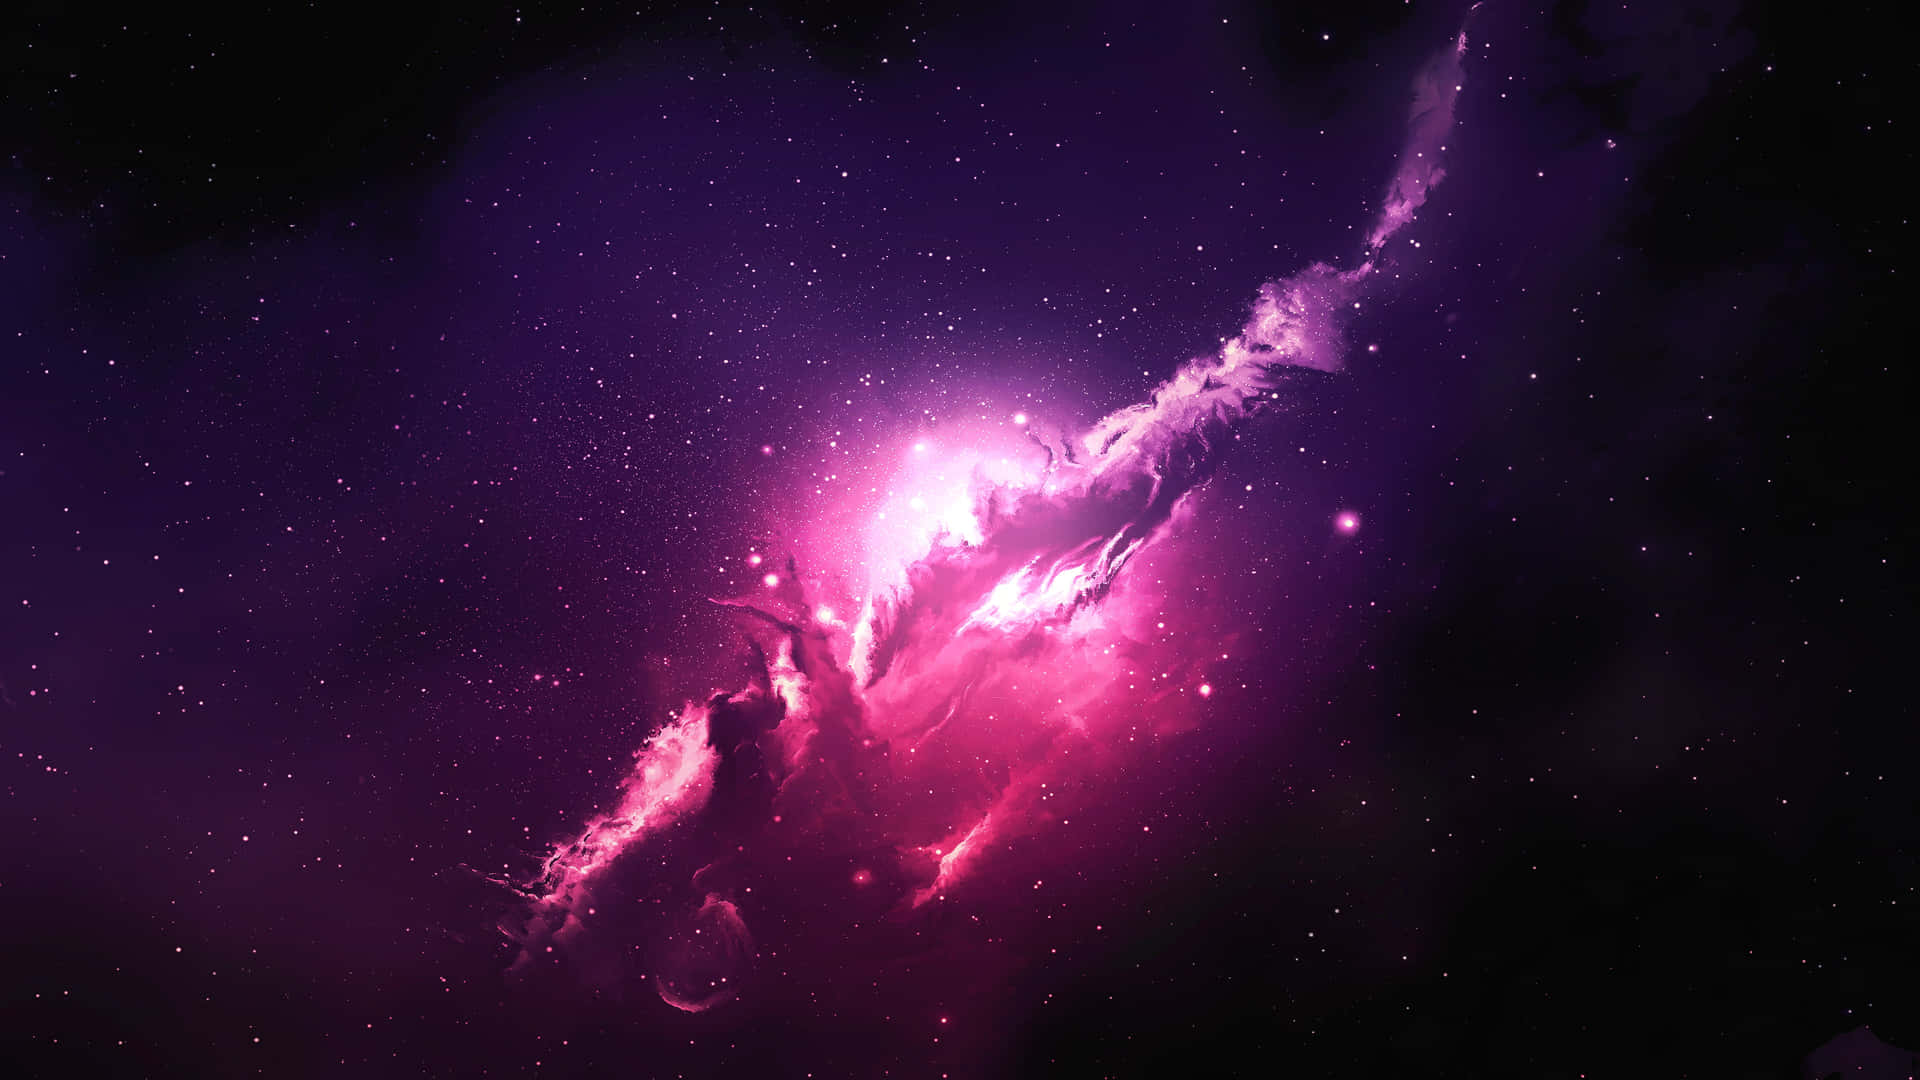 Sumérgeteen Las Profundidades De Una Galaxia Negra Y Púrpura Llena De Ensueño. Fondo de pantalla